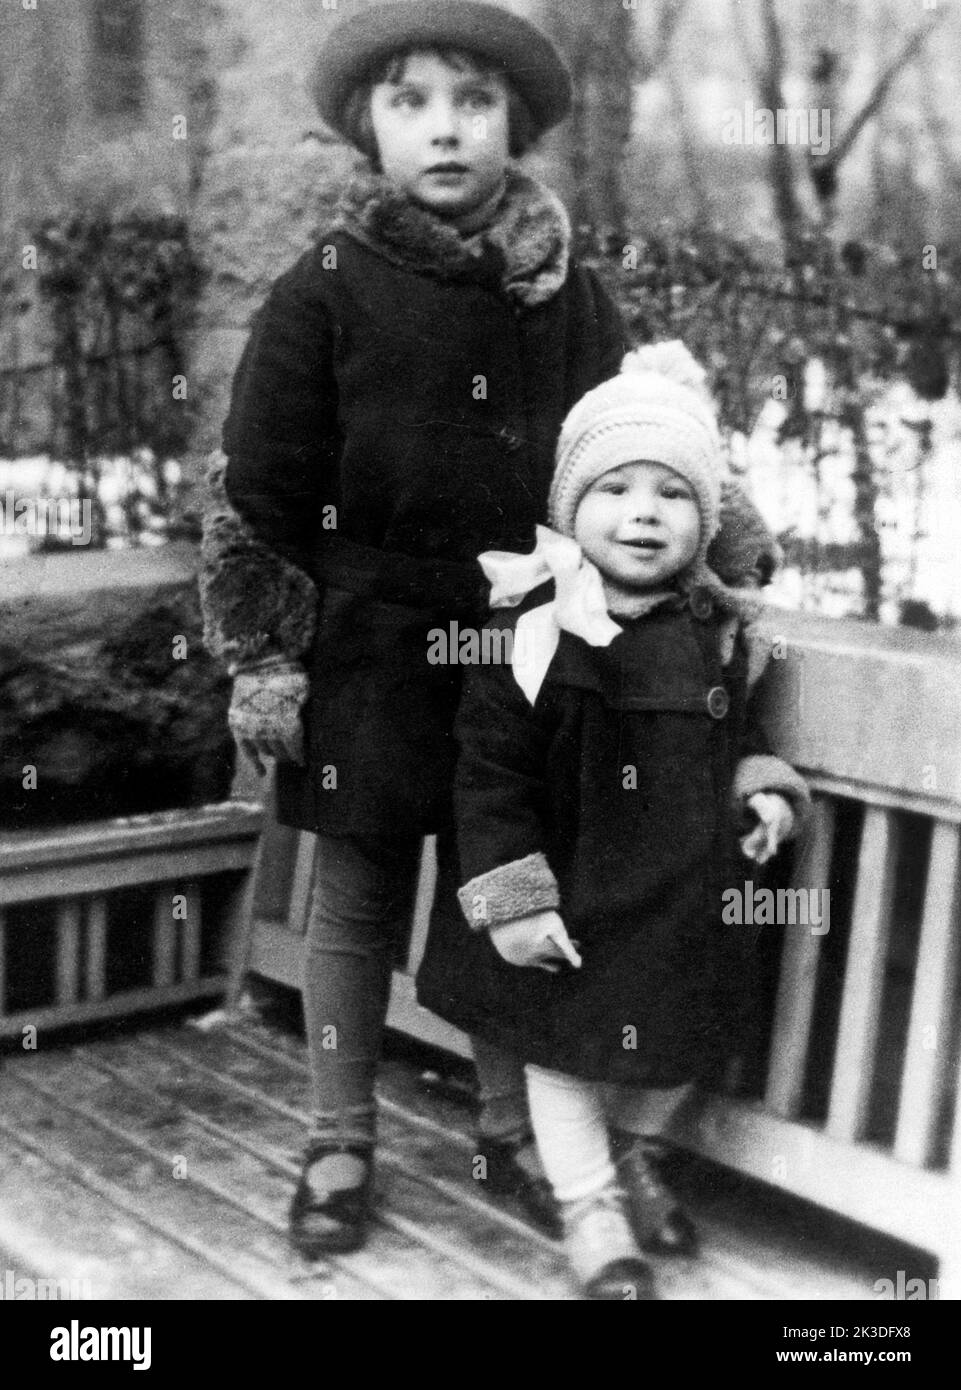 Kinderbild vom späteren Schauspieler Günter Lamprecht mit seiner Schwester, Deutschland um 1932. Stock Photo